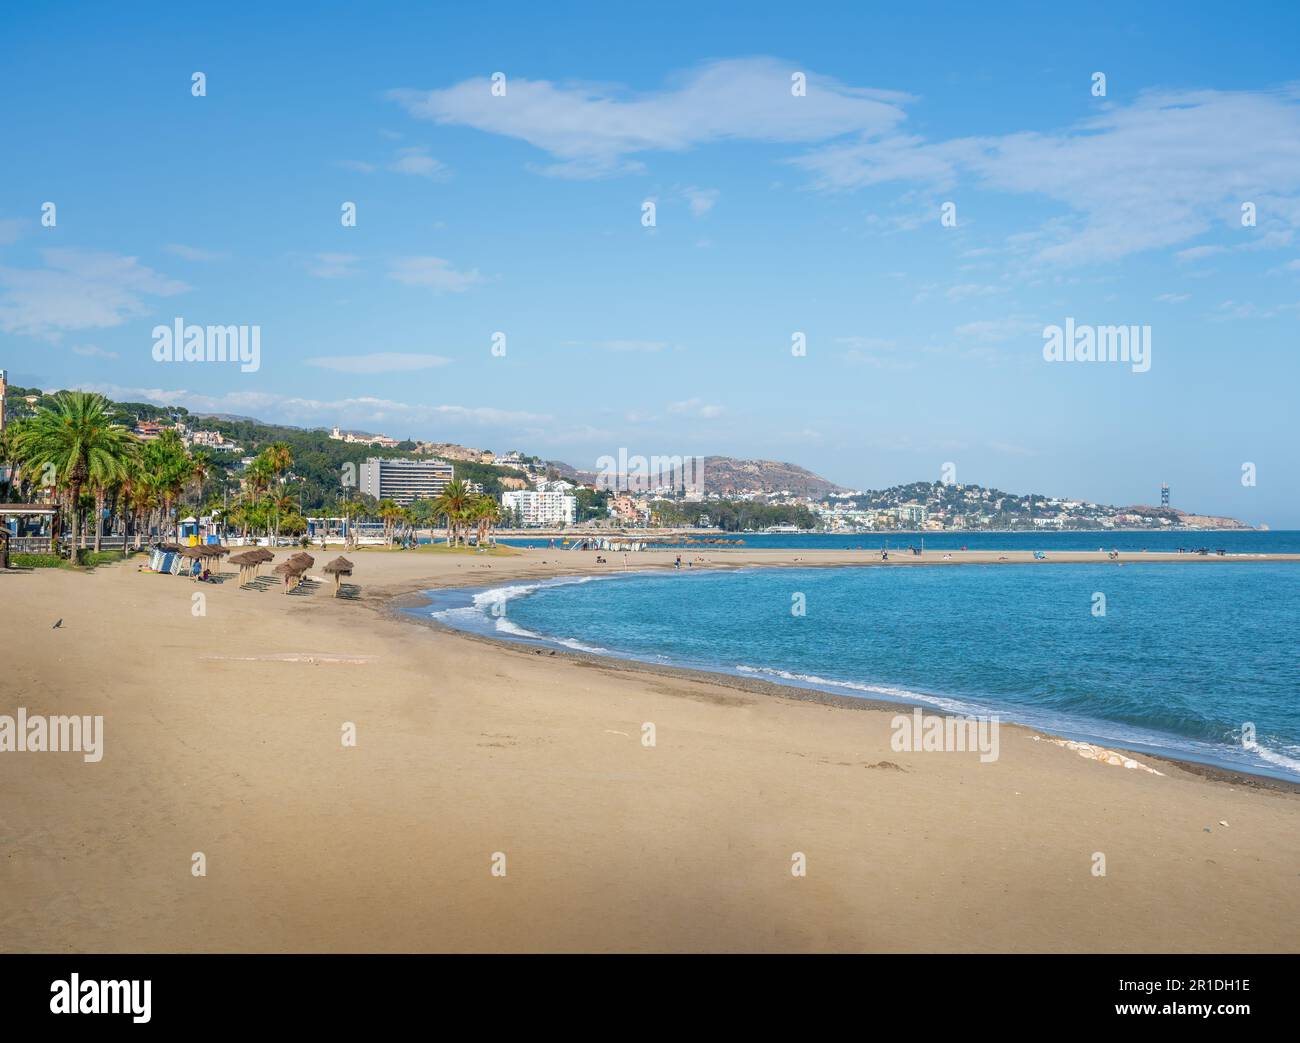 La Malagueta Beach - Malaga, Andalusia, Spain Stock Photo